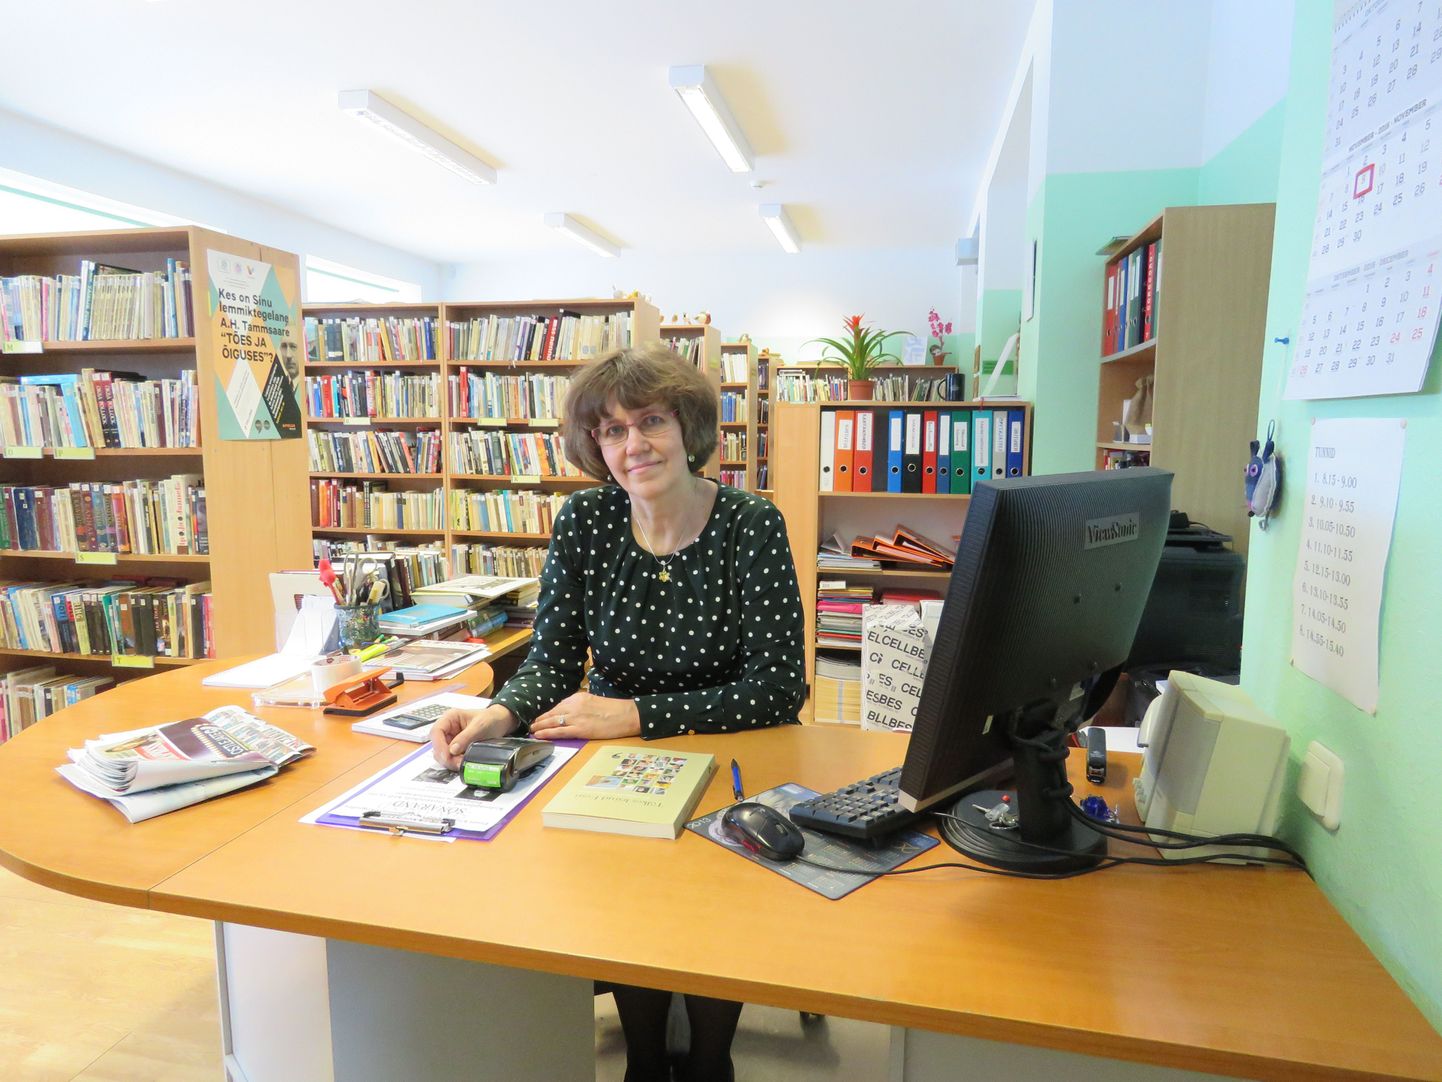 Alates esmaspäevast saab Tsirguliinas postiteenust raamatukogus selle lahtiolekuajal. Raamatukogu juhataja Tiia Pärnik on nüüdsest ühtlasi ka postitöötaja.